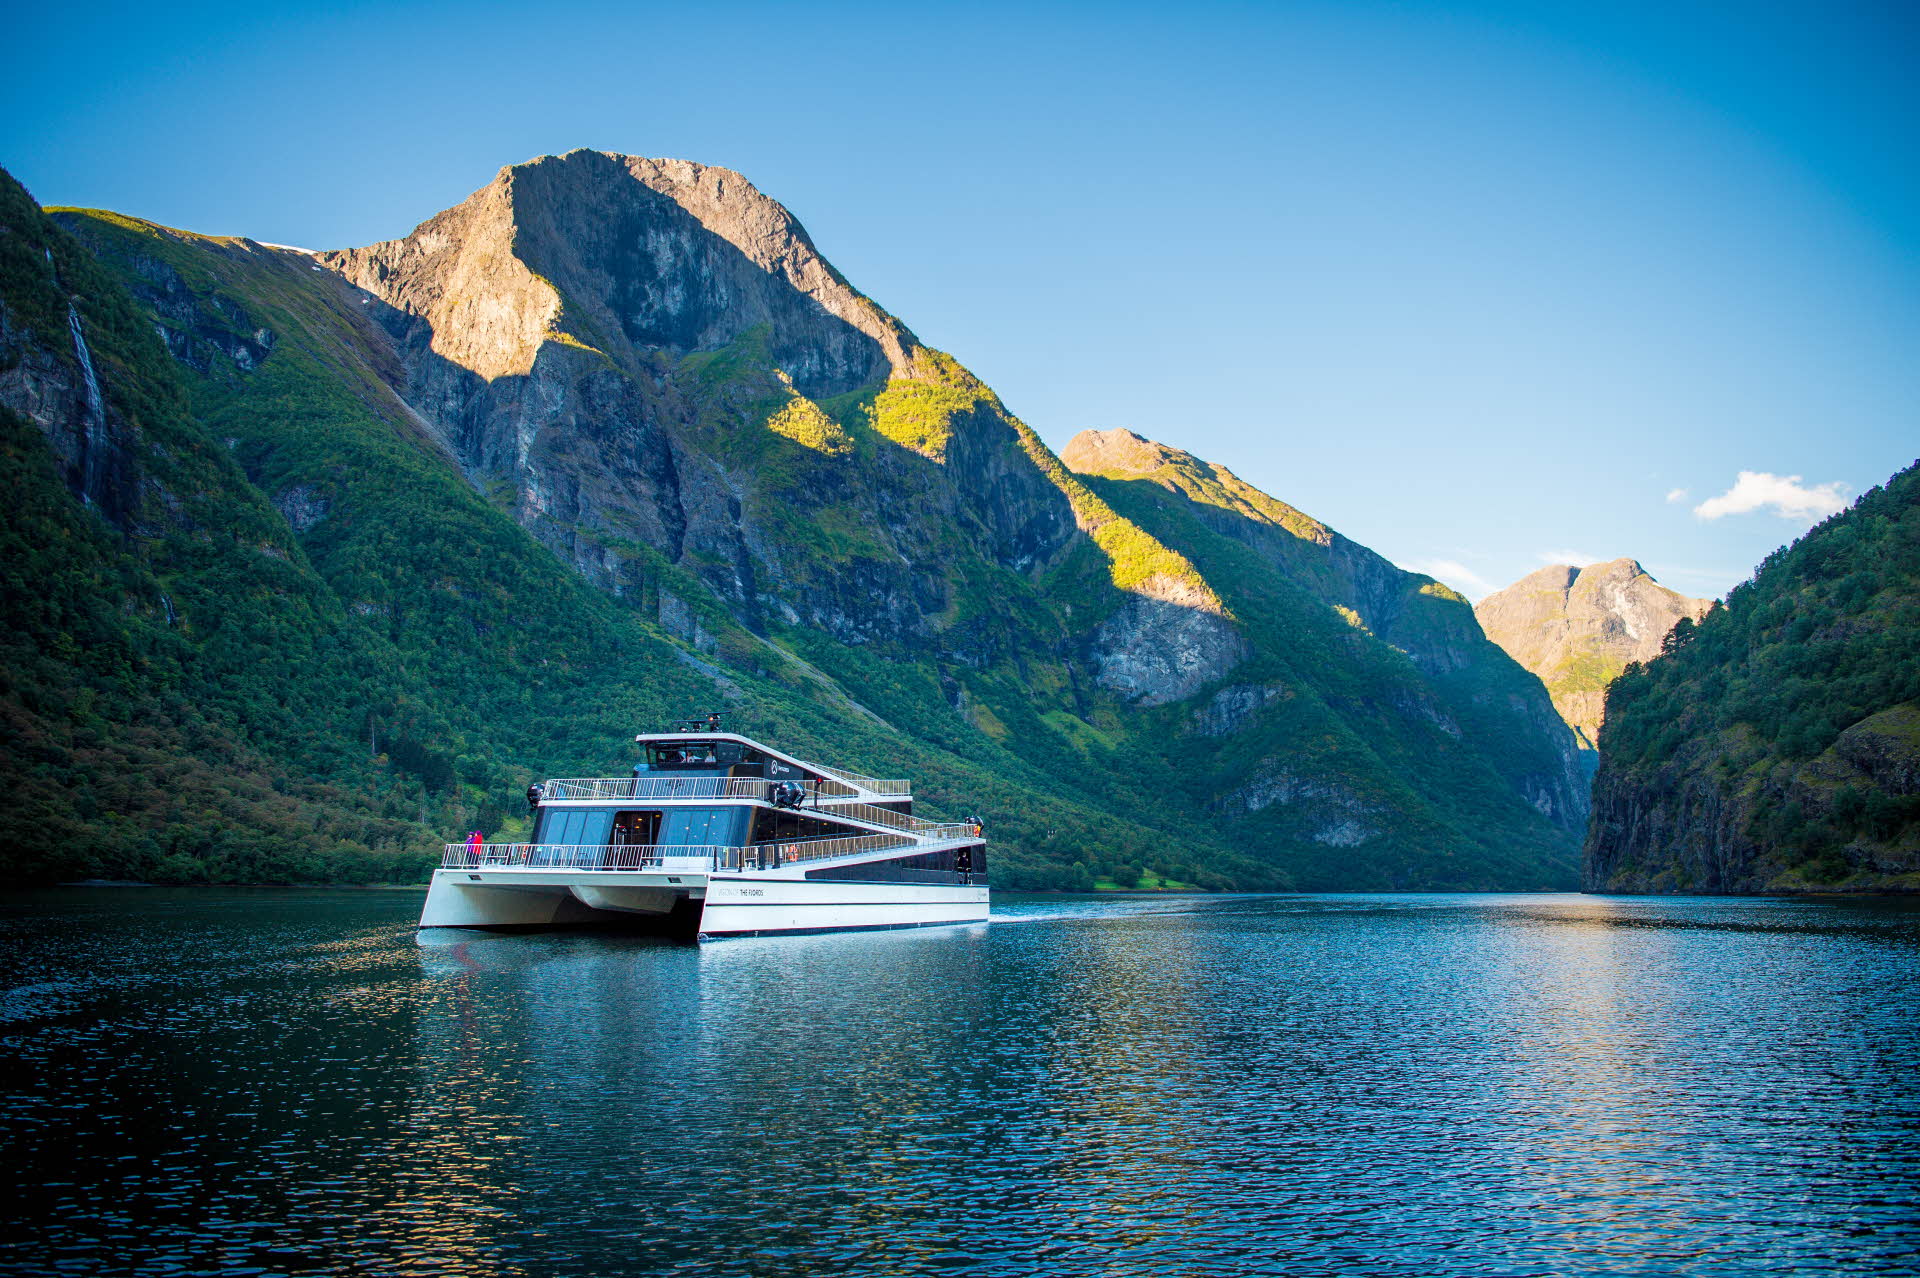 Le bateau Future of the Fjords naviguant en plein été sur les eaux calmes de l’étroit Nærøyfjord, inscrit au patrimoine mondial de l’UNESCO, avec de hautes montagnes à l’arrière-plan.